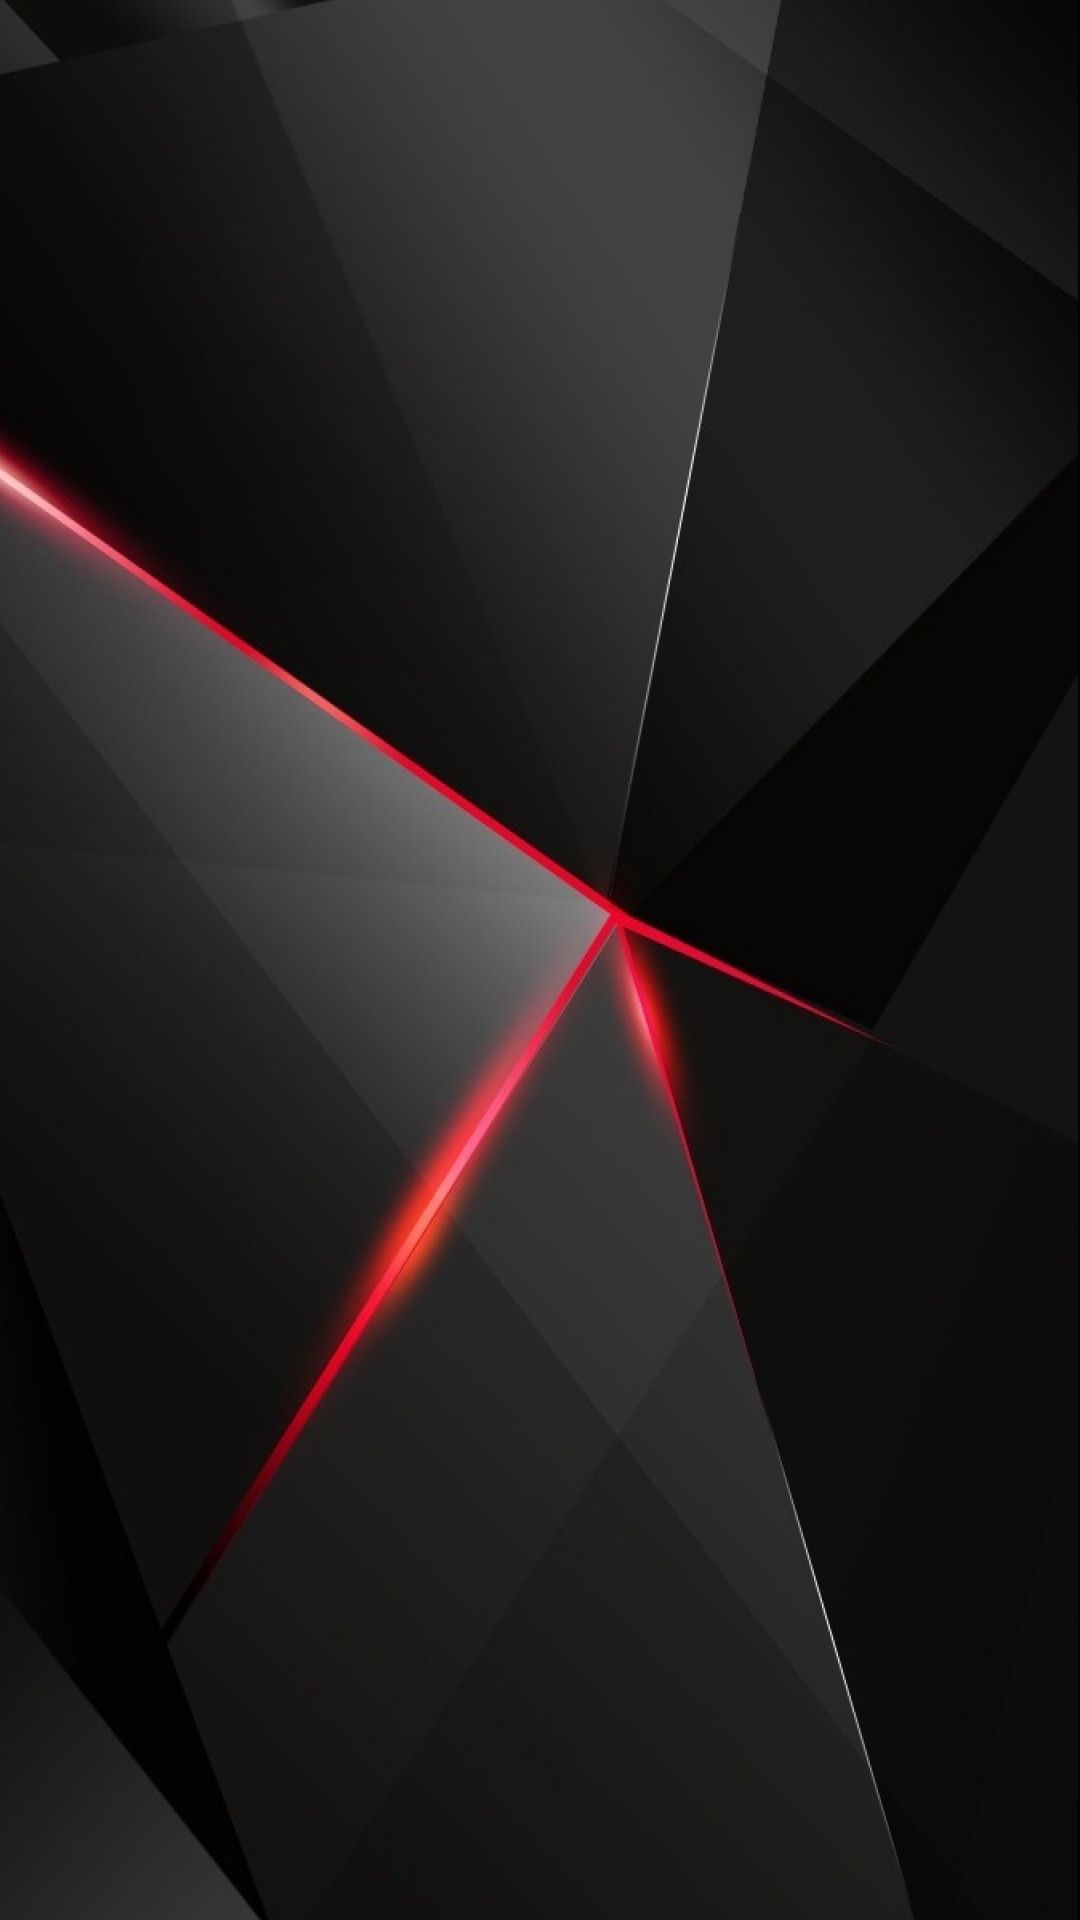 android central wallpaper galerie,schwarz,rot,licht,linie,design